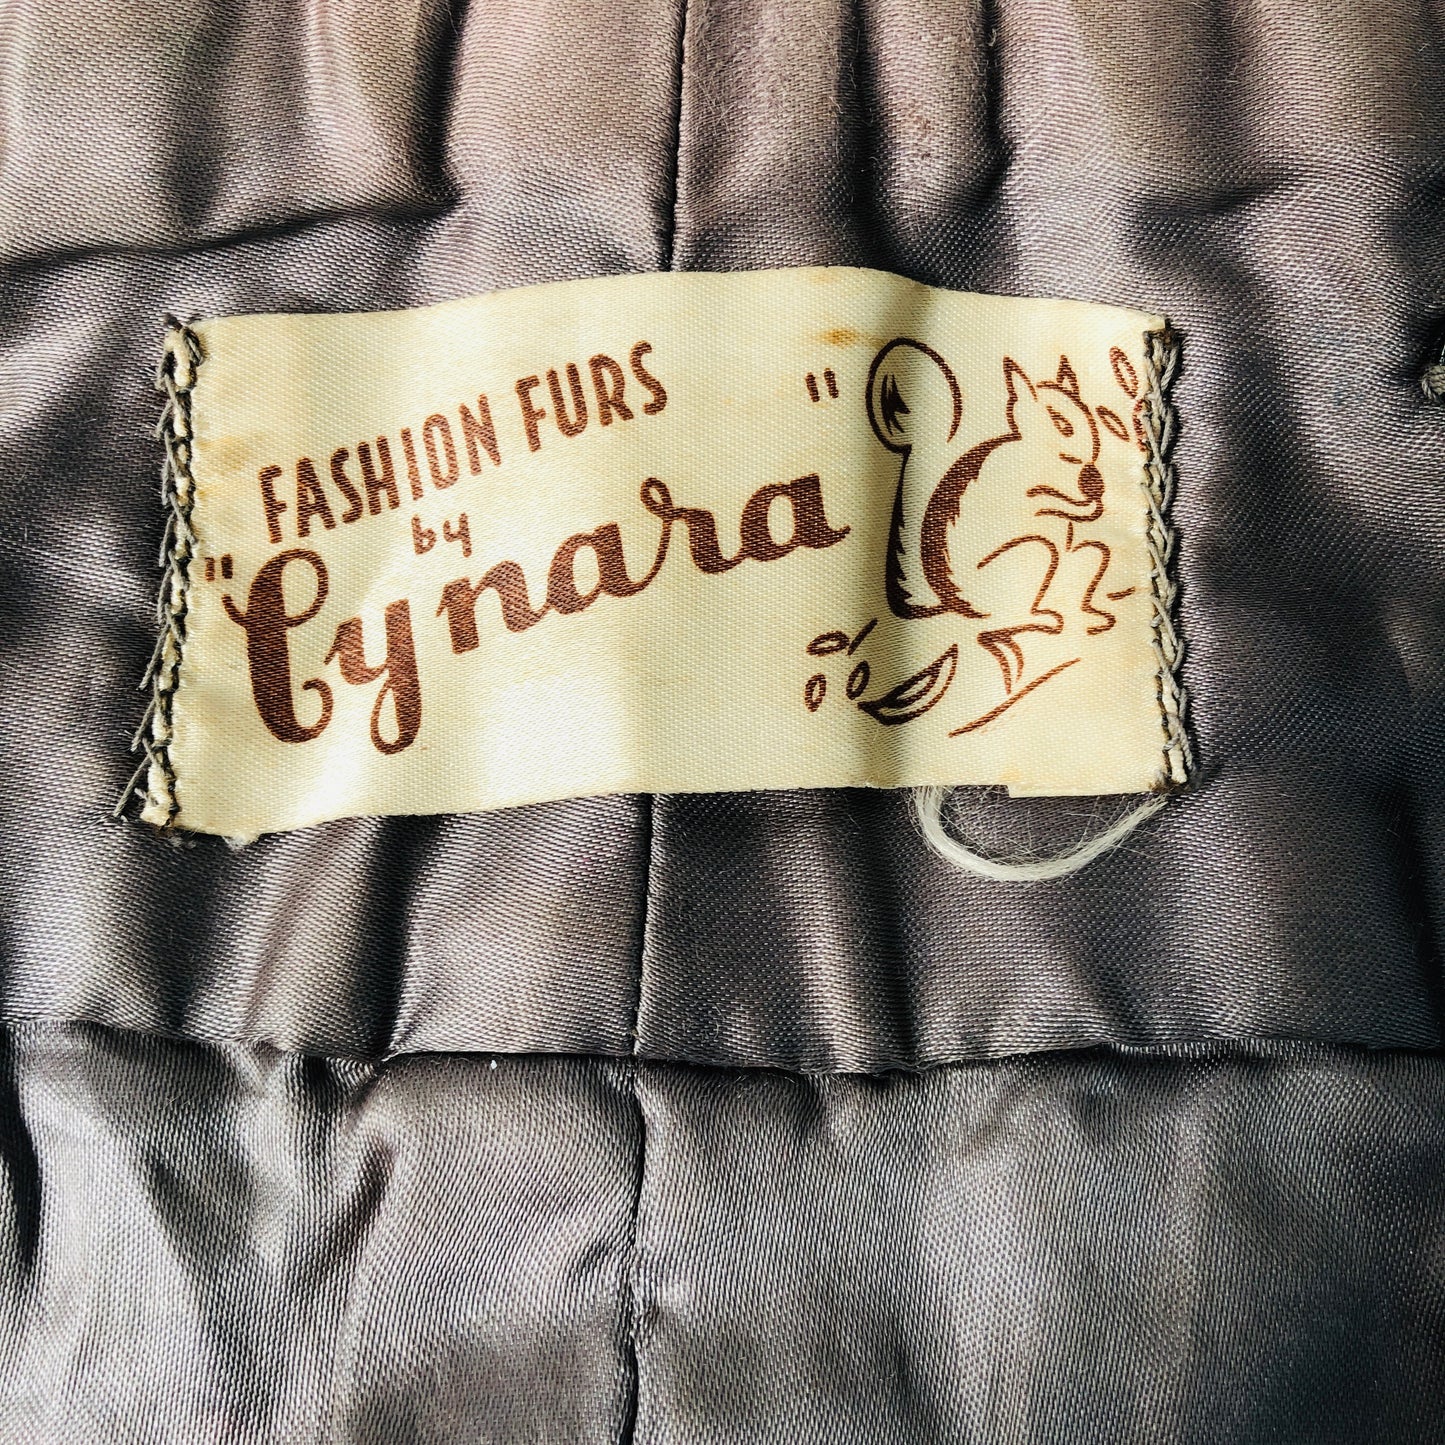 
                  
                    Fur Stole - Fashion Furs by Cynara (16653)
                  
                